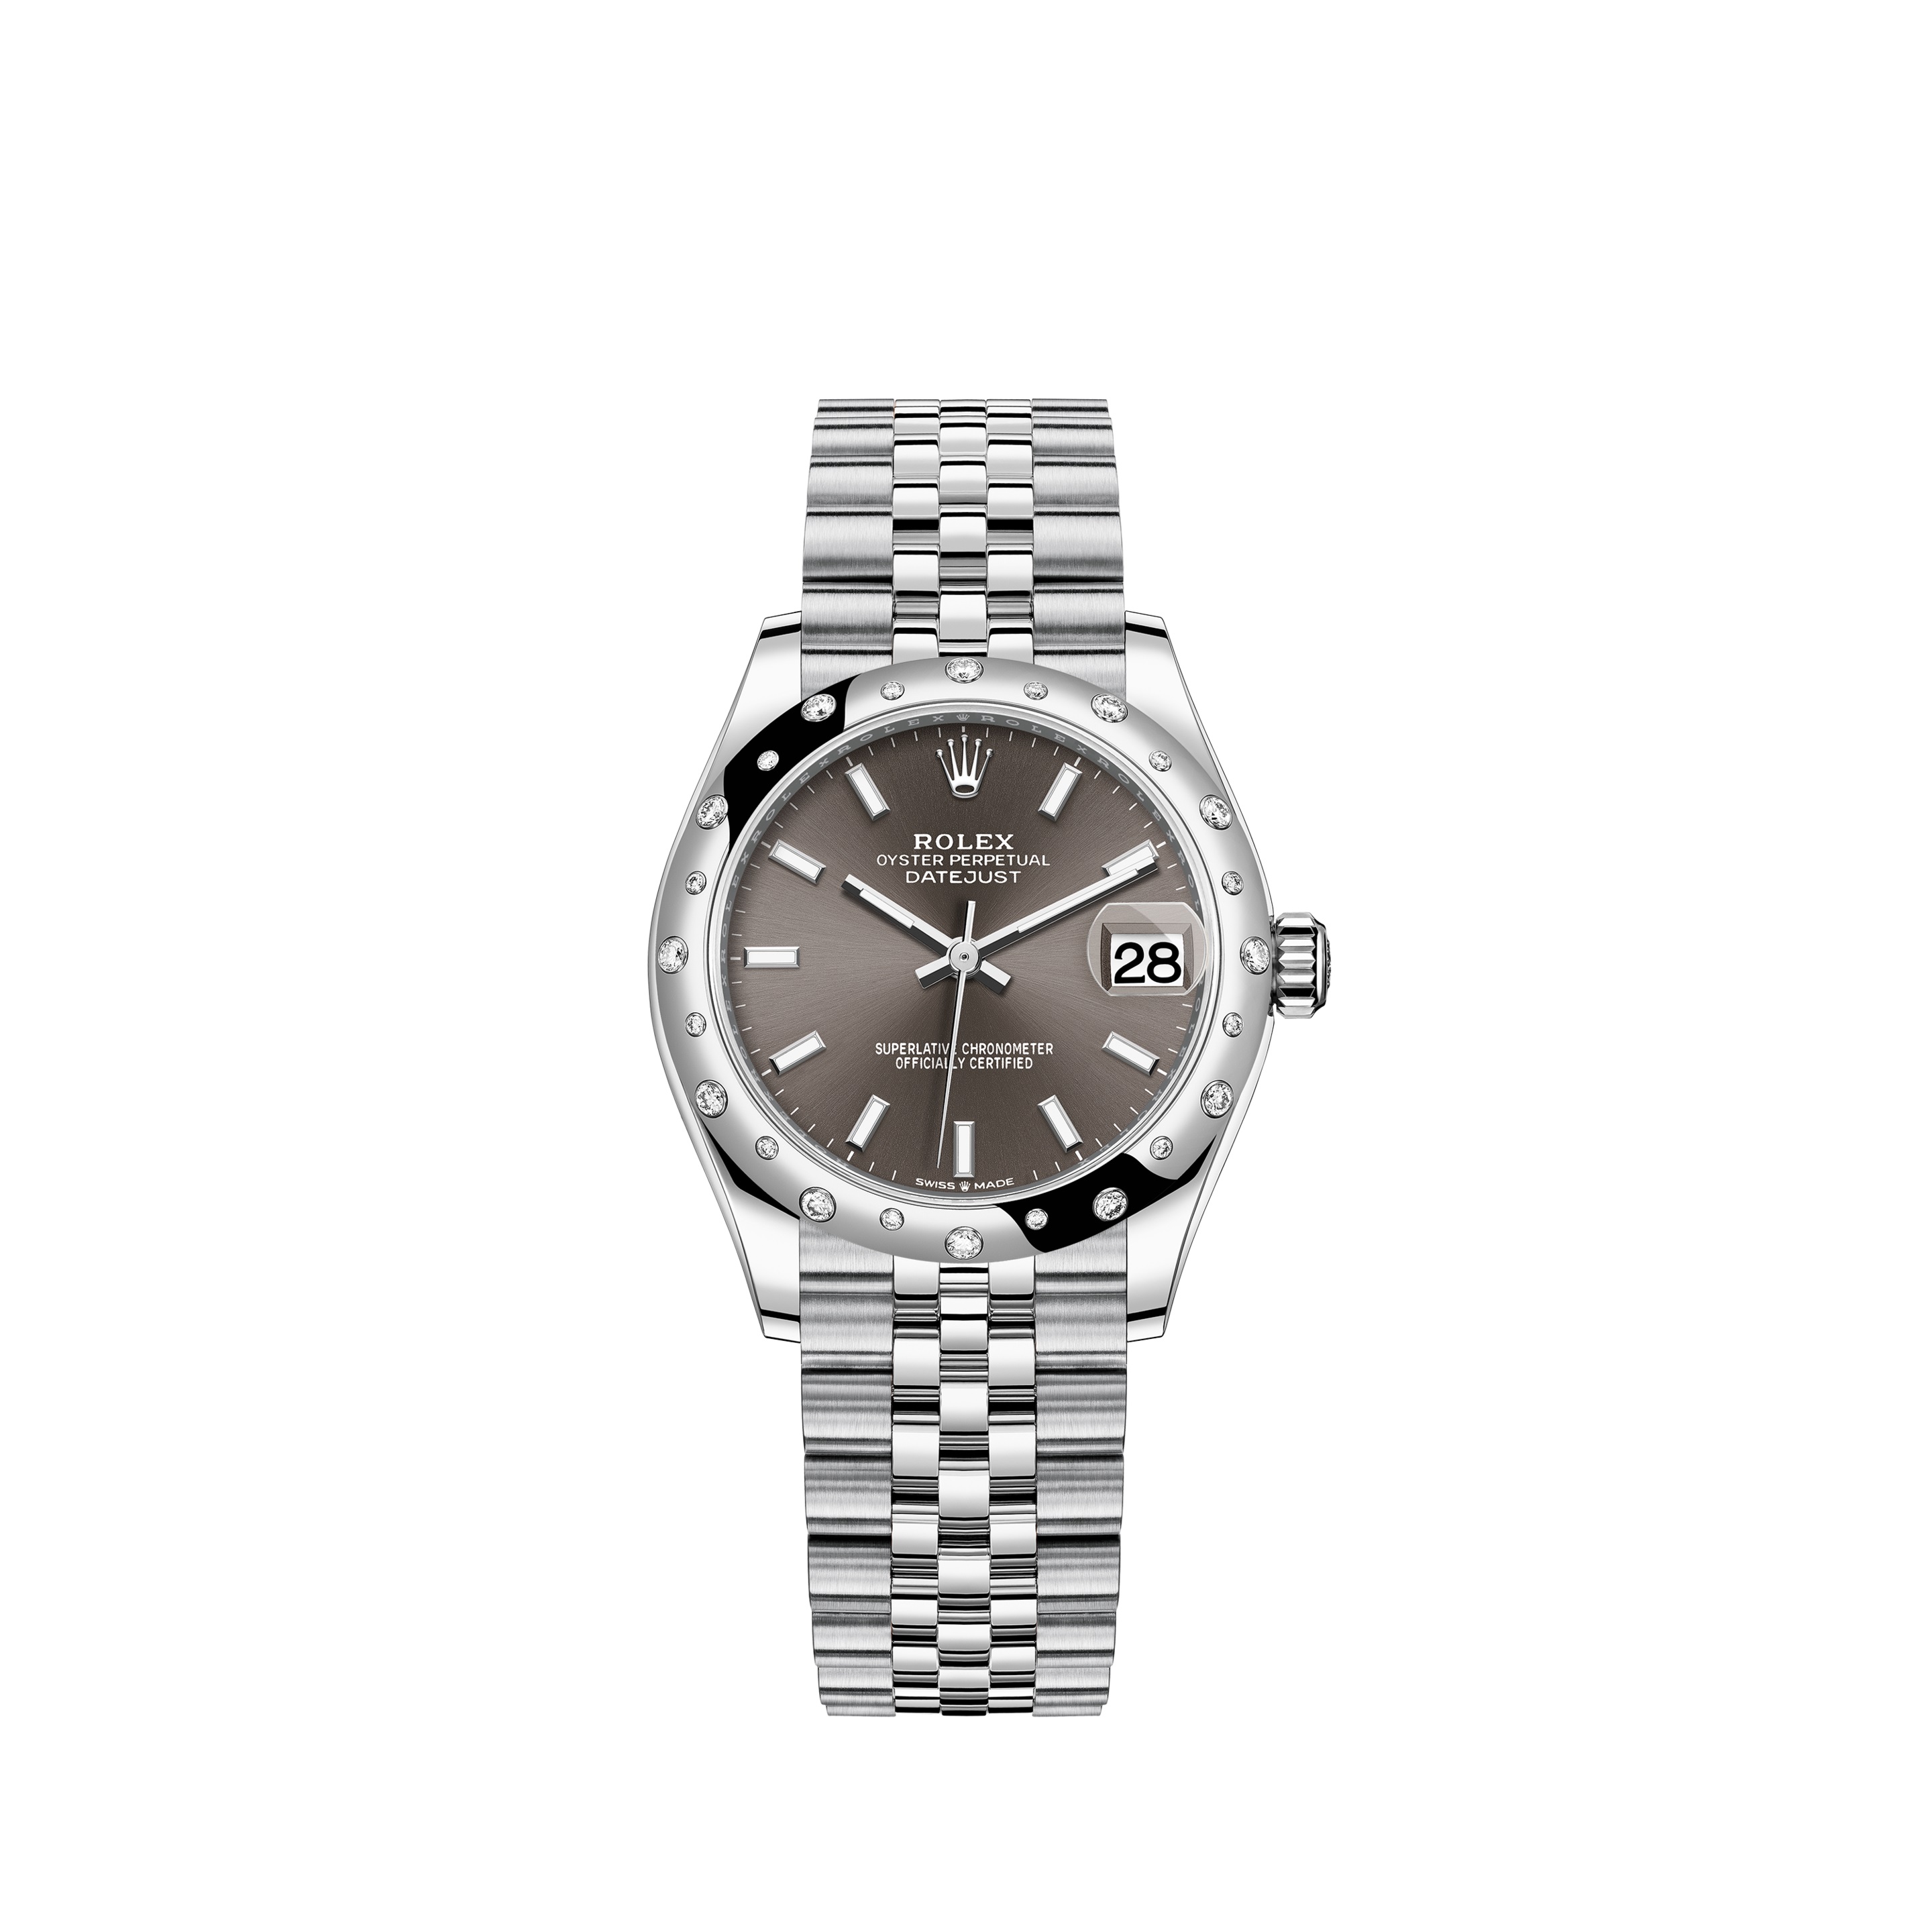 Datejust 31 278344RBR White Gold & Stainless Steel Watch (Dark Grey)